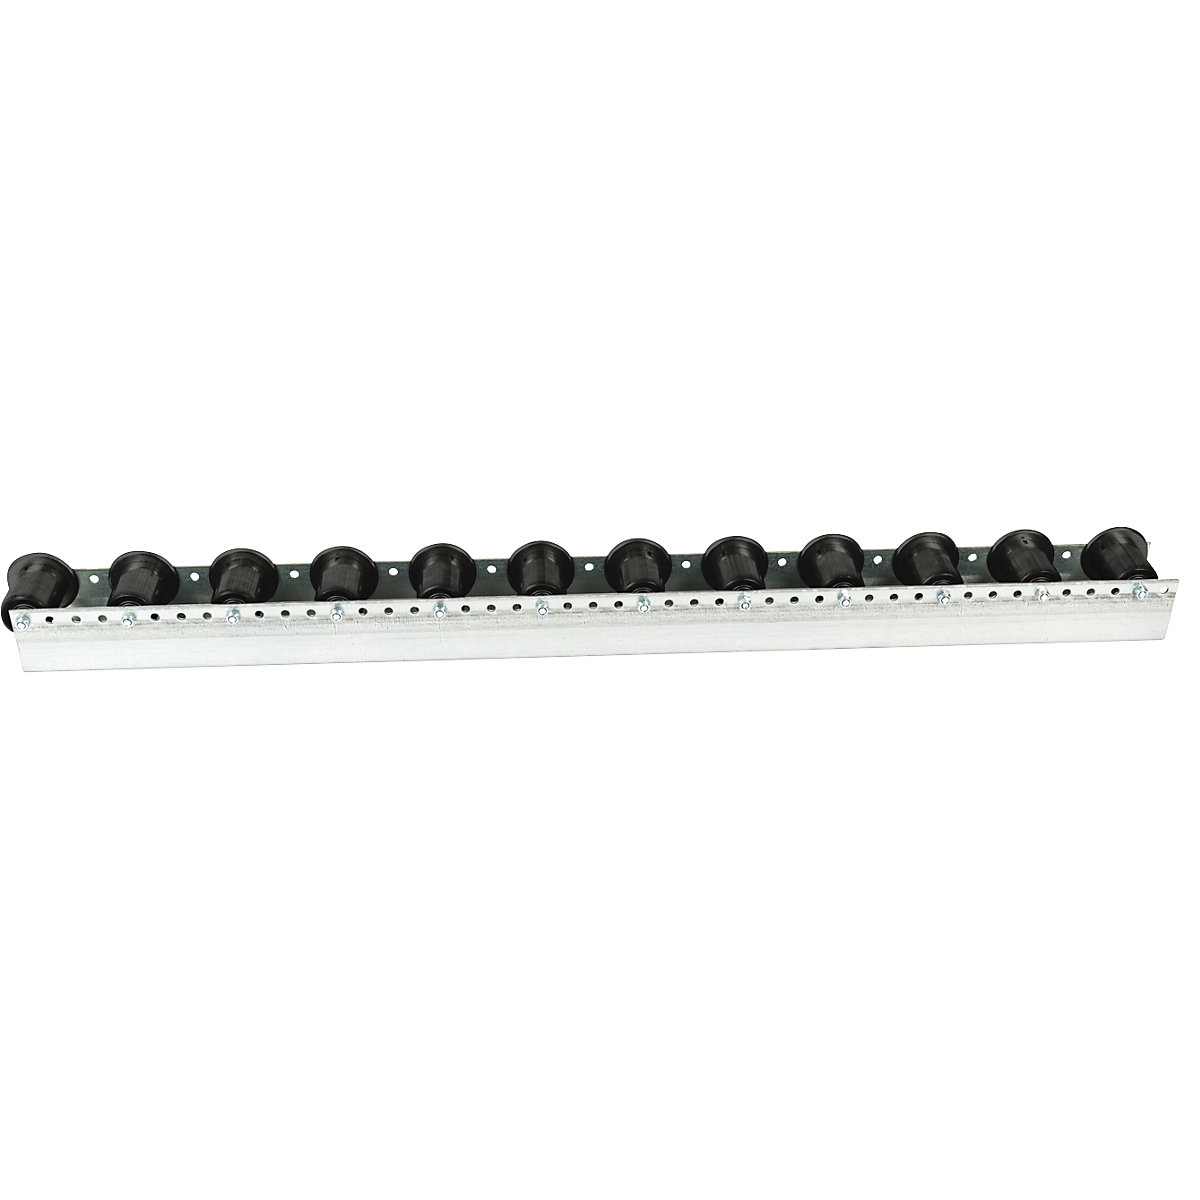 Guia de rolos com rolos de friso, divisão 104 mm, Ø 50 mm, plástico, comprimento 1,2 m-1